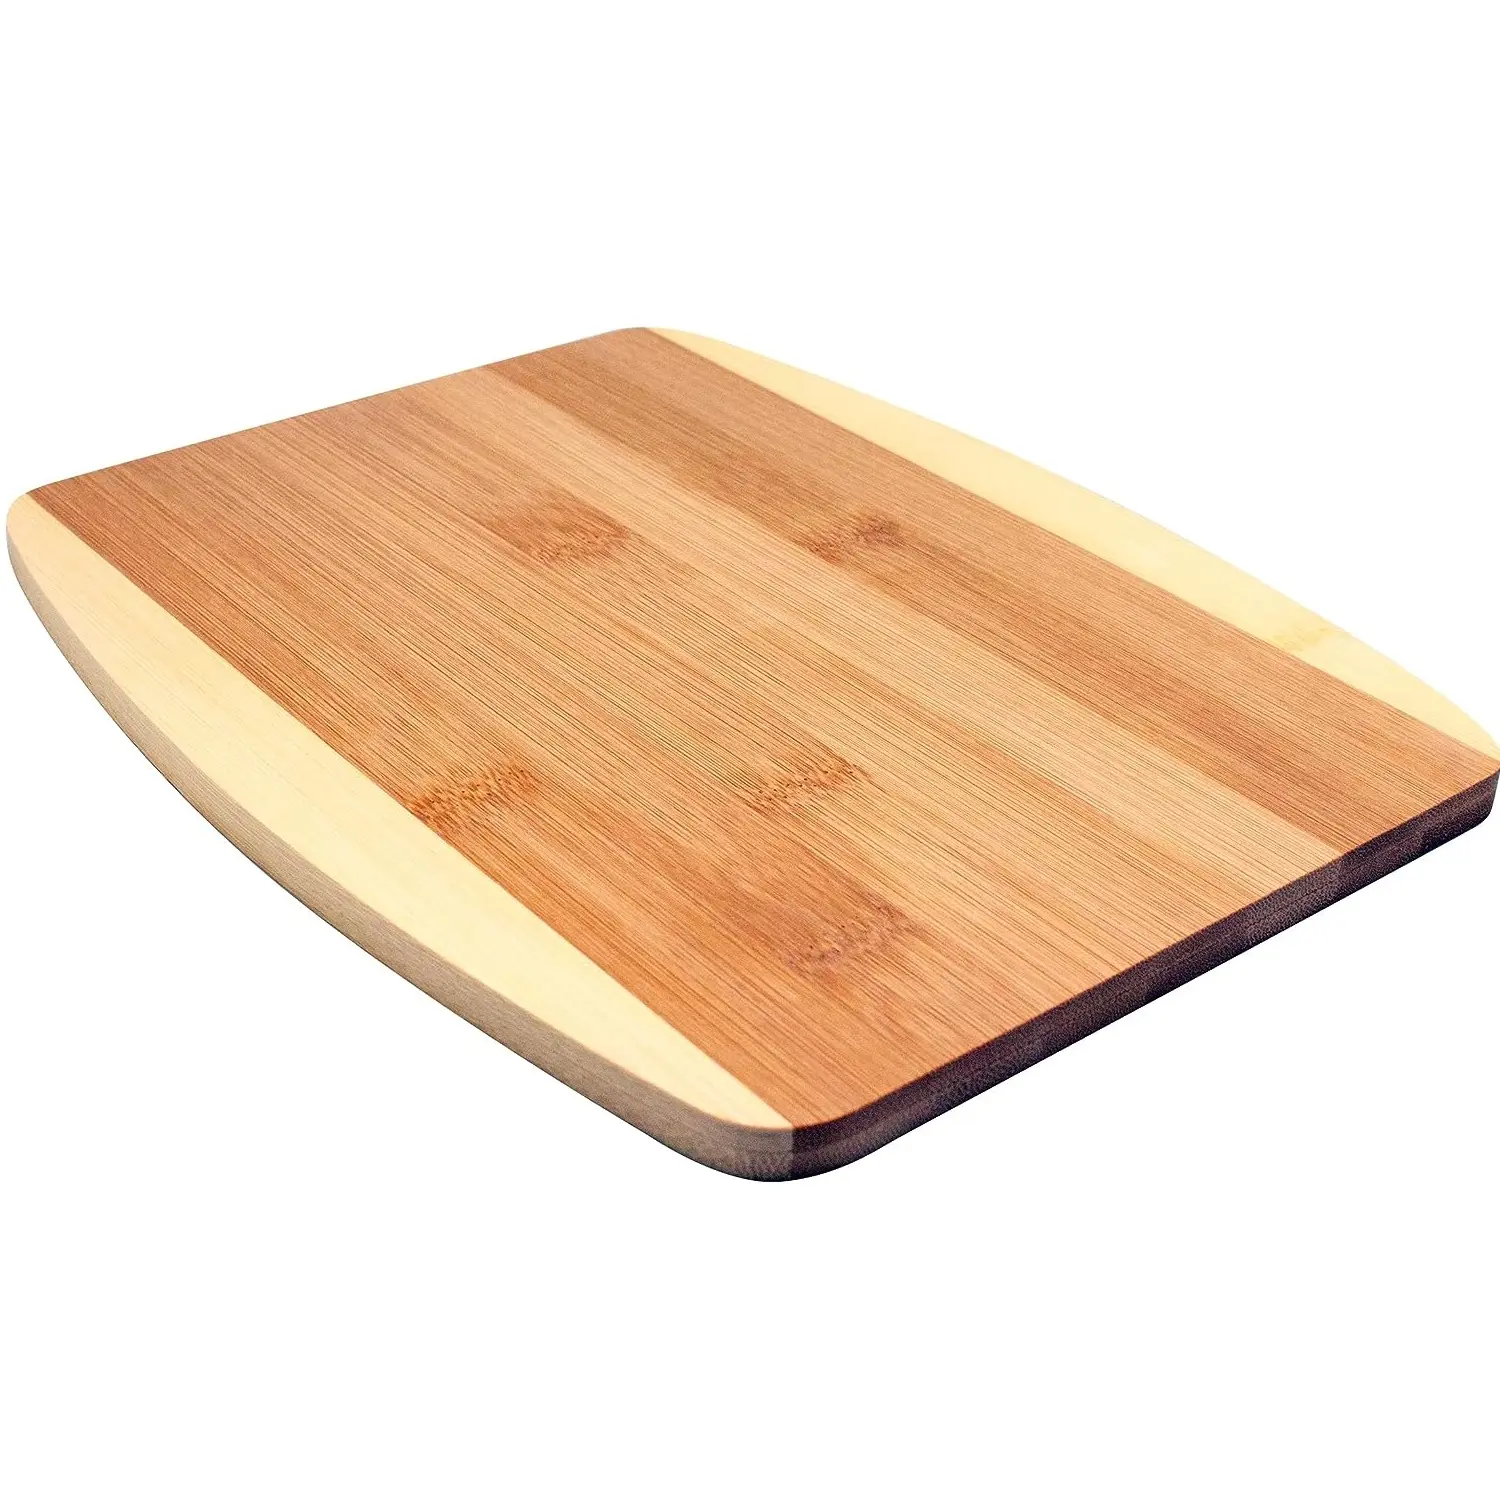 最新かつ最新のデザインスクエア木製まな板売れ筋まな板信頼性の高い販売